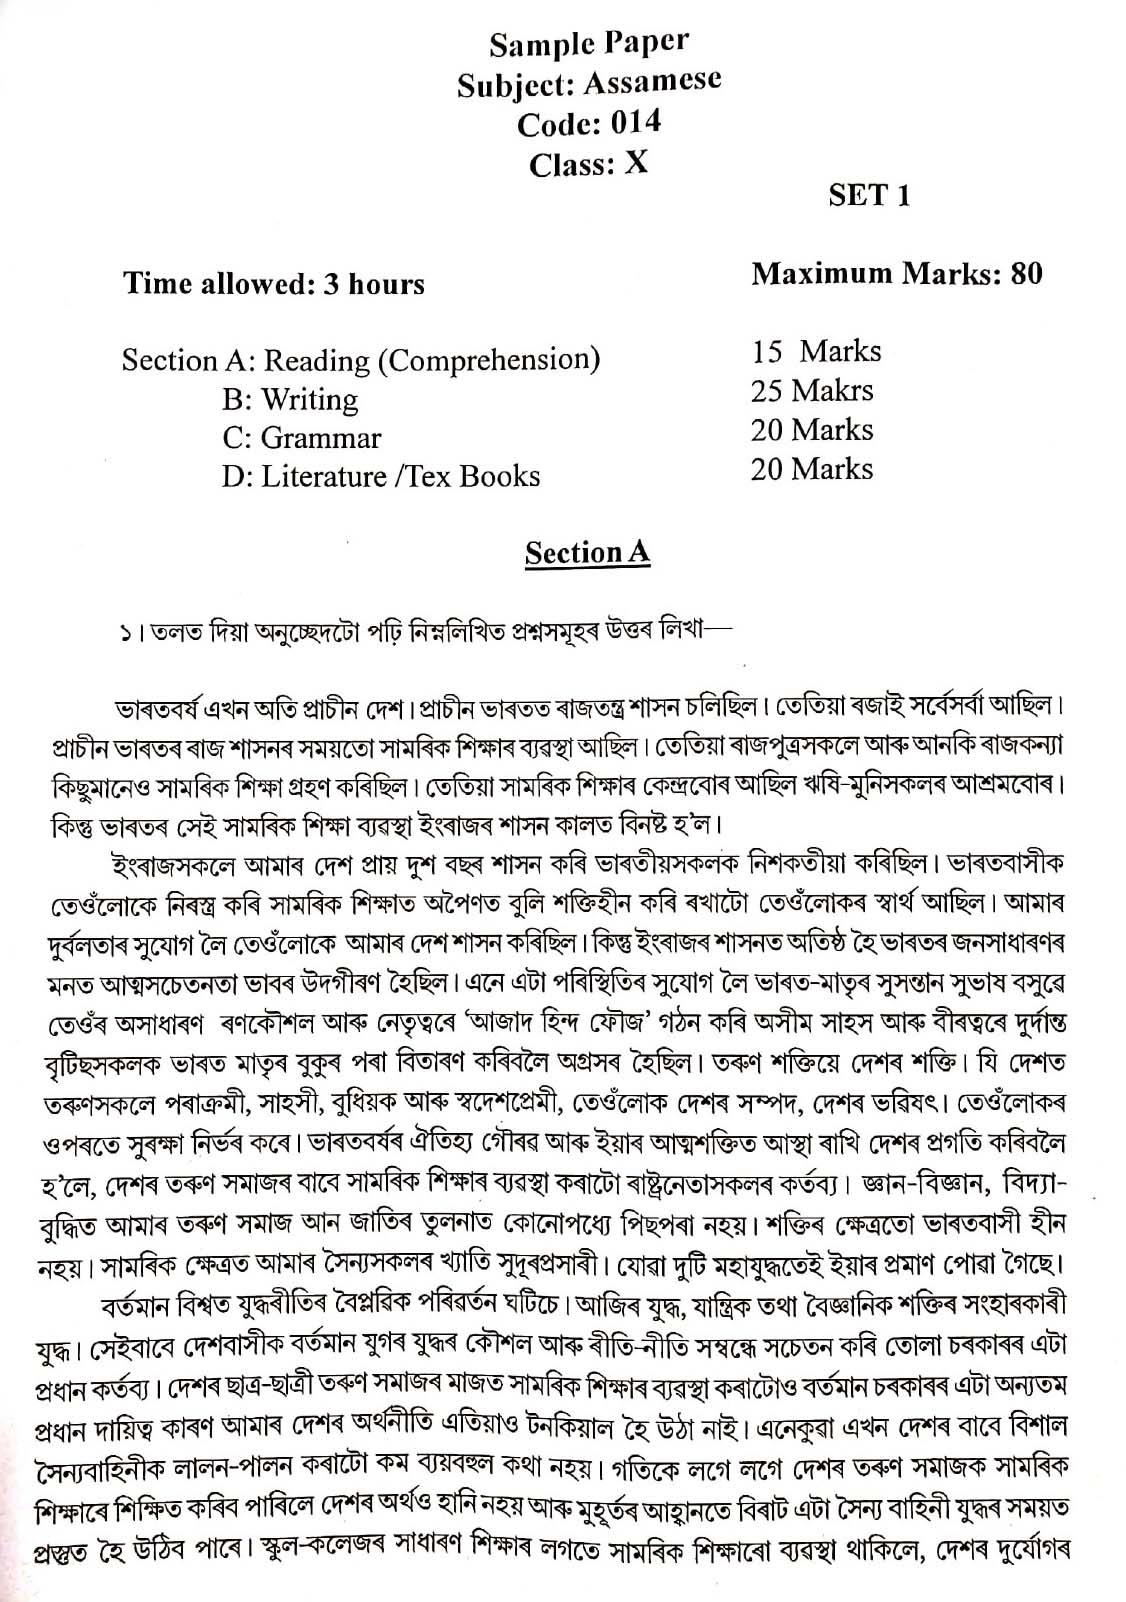 Assamese CBSE Class X Sample Question Paper 2019 20 - Image 1